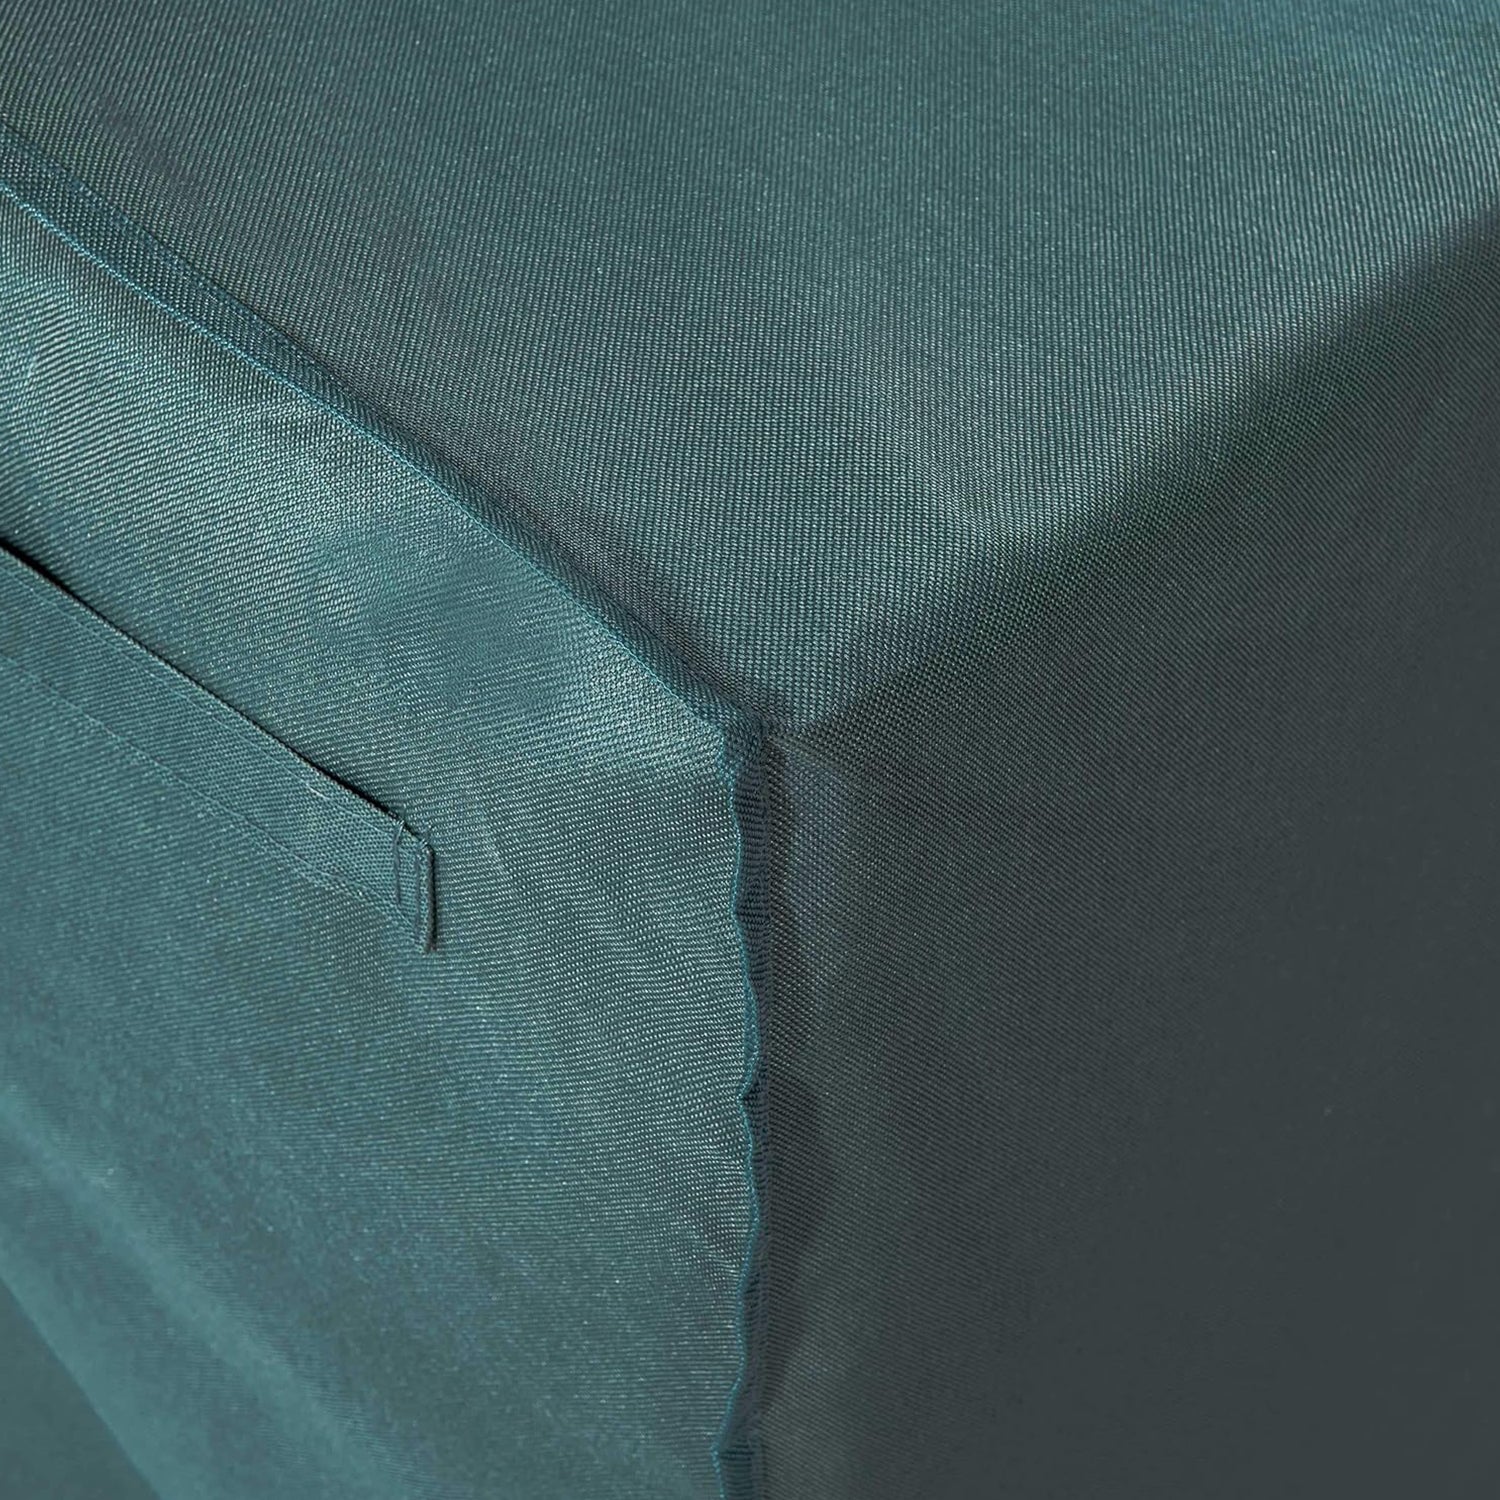 Abdeckung für gestapelte Patio Stühle - 85 x 65 x 80/119 cm - Grün/Grau